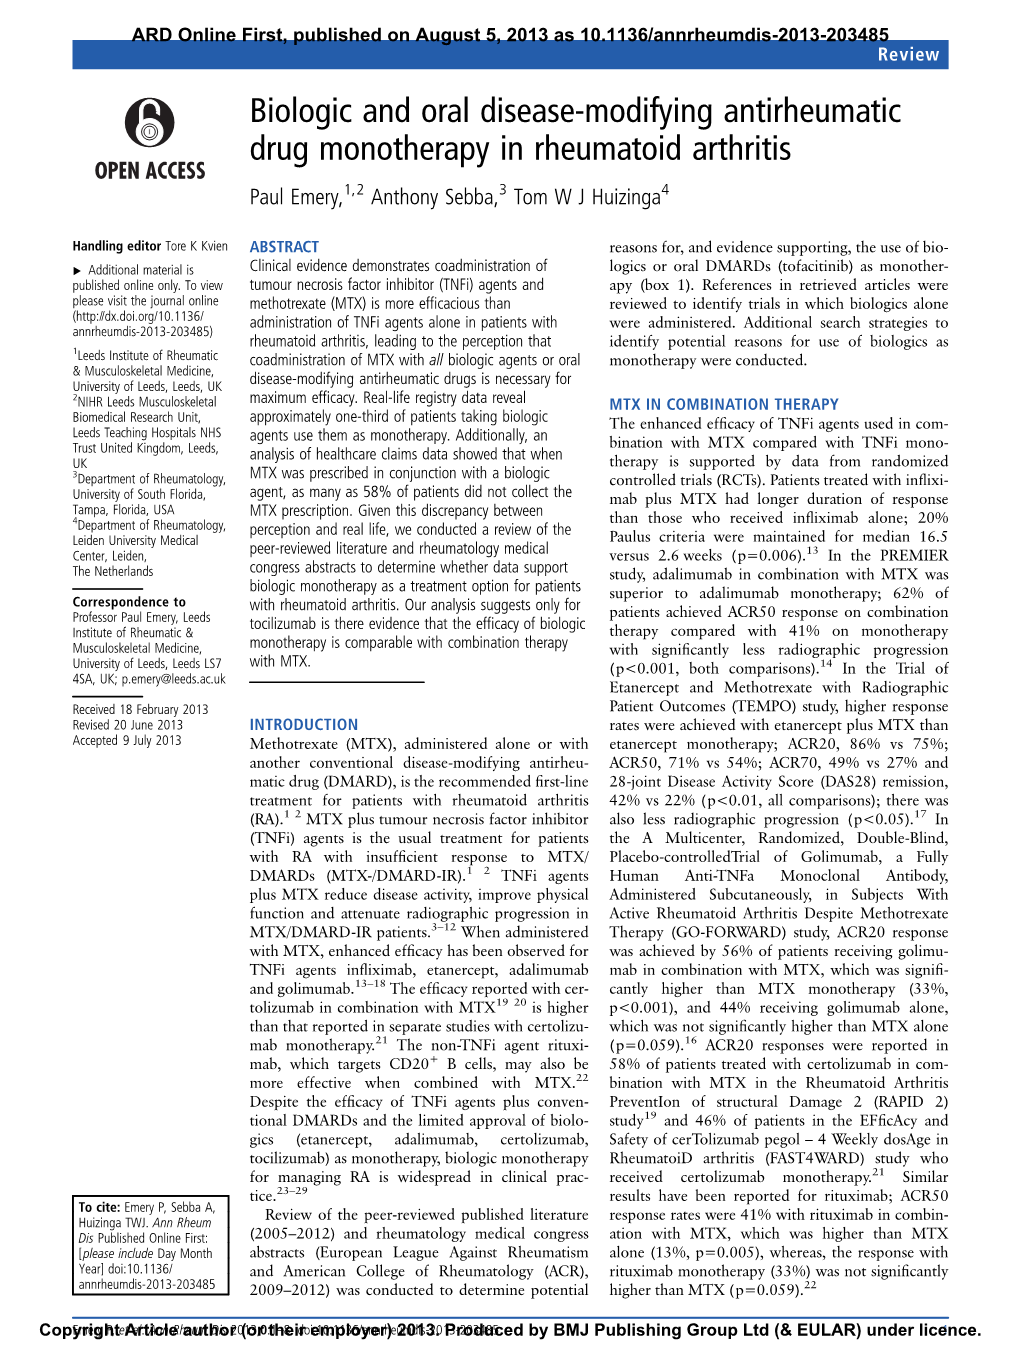 Biologic and Oral Disease-Modifying Antirheumatic Drug Monotherapy in Rheumatoid Arthritis Paul Emery,1,2 Anthony Sebba,3 Tom W J Huizinga4